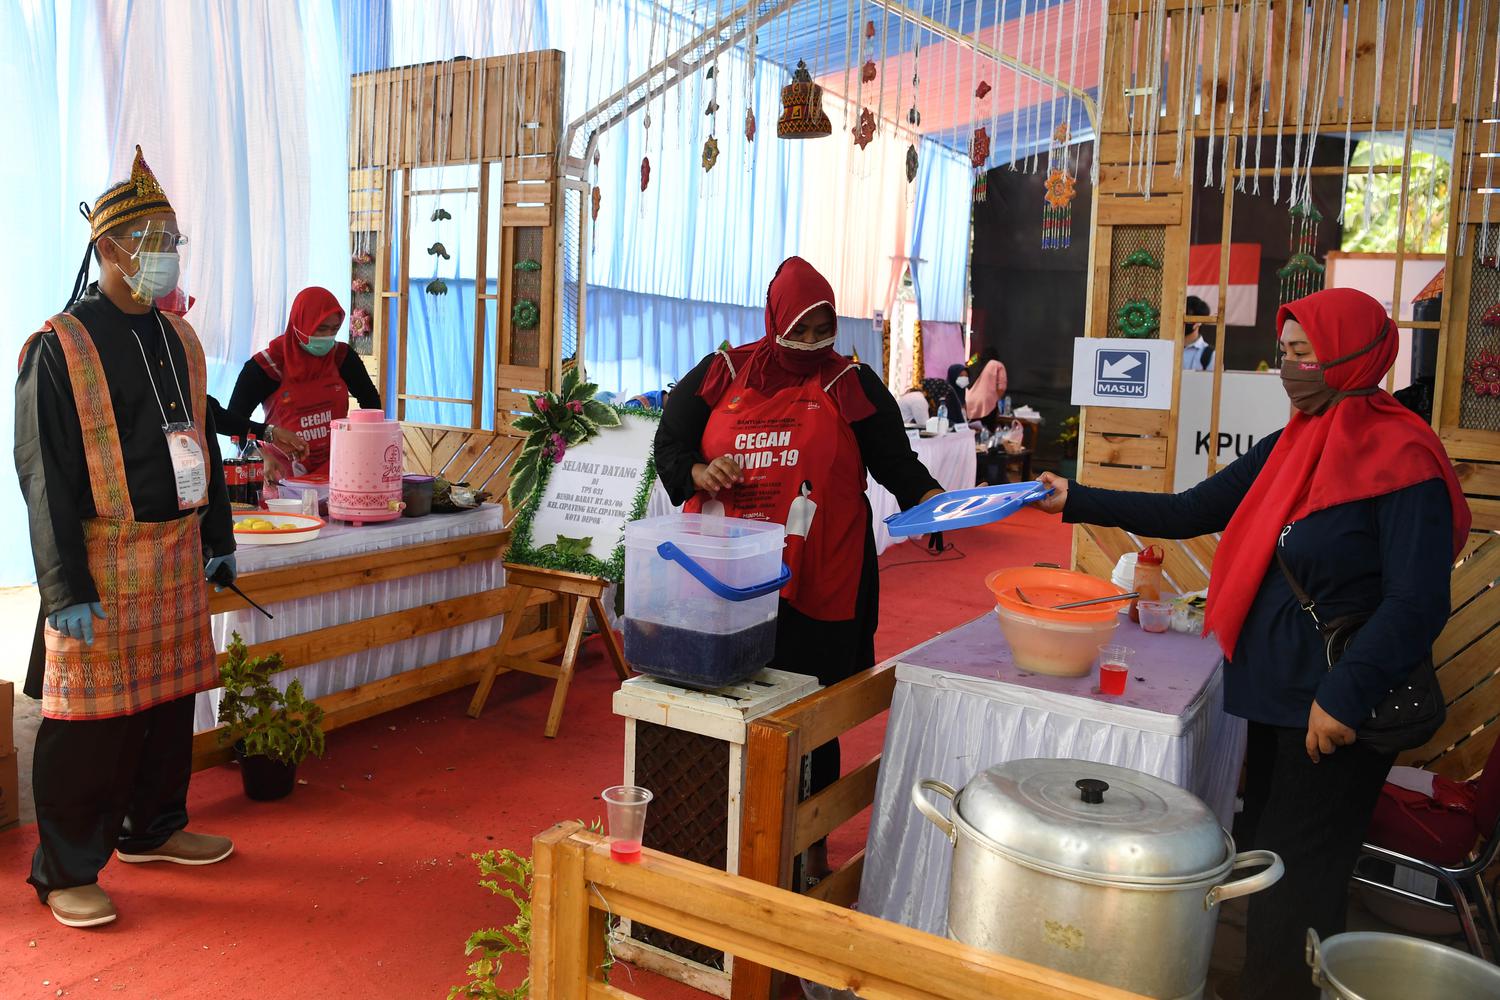 Panitia menyiapkan makanan untuk warga yang menggunakan hak pilihnya pada Pilkada Depok di TPS 31 Benda Barat dengan tema adat Melayu di Depok, Jawa Barat, Rabu (9/12/2020). Pilkada serentak tahun 2020 dilaksanakan di 270 wilayah di Indonesia meliputi sembilan provinsi, 224 kabupaten dan 37 kota dengan menerapkan protokol kesehatan untuk mengantisipasi penyebaran COVID-19.